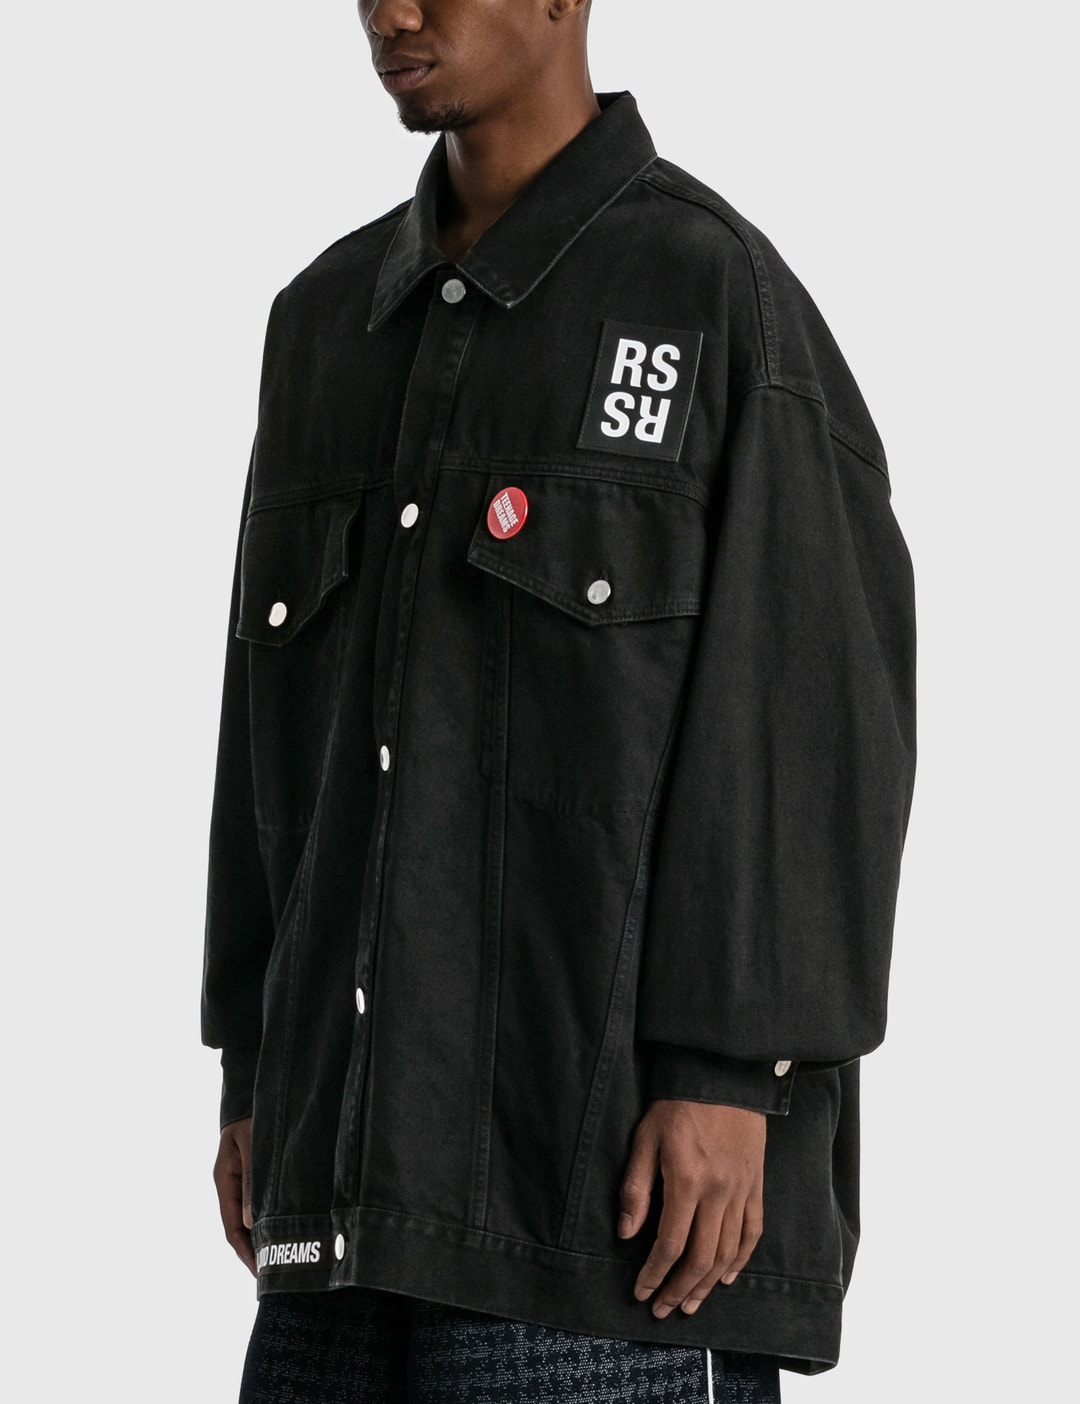 Raf Simons - Oversized Denim Jacket | HBX - Globally Curated Fashion ...